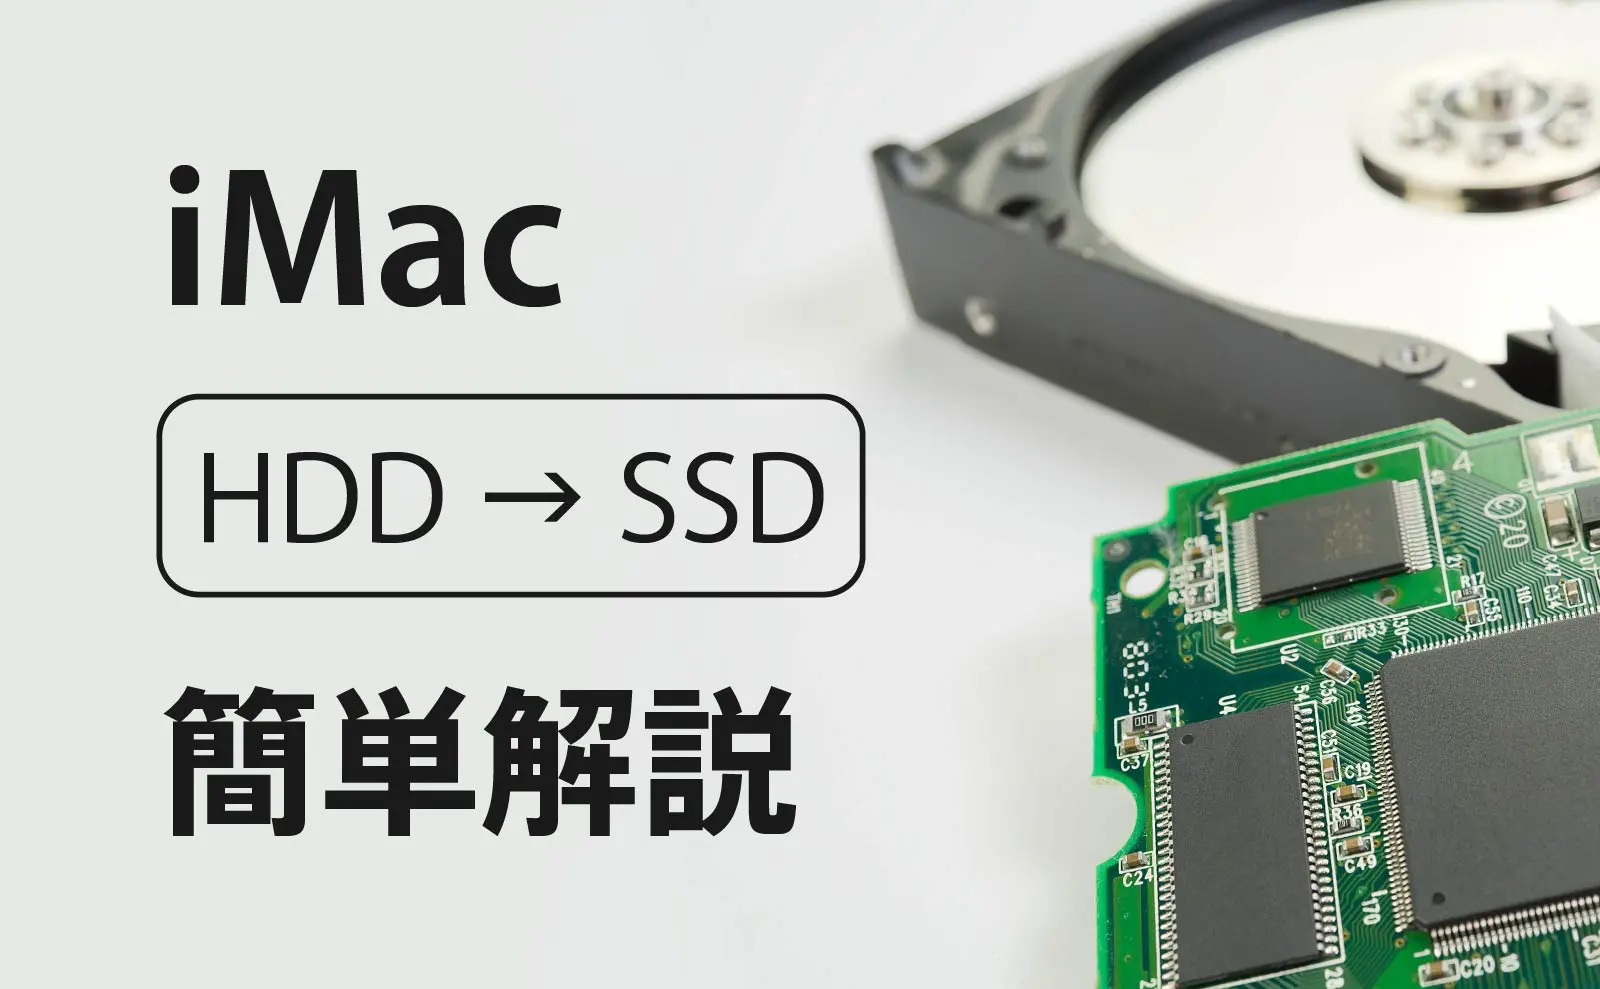 iMac 5K 27インチ 2015 を SSD への換装(HDDから交換)を写真付きで簡単 